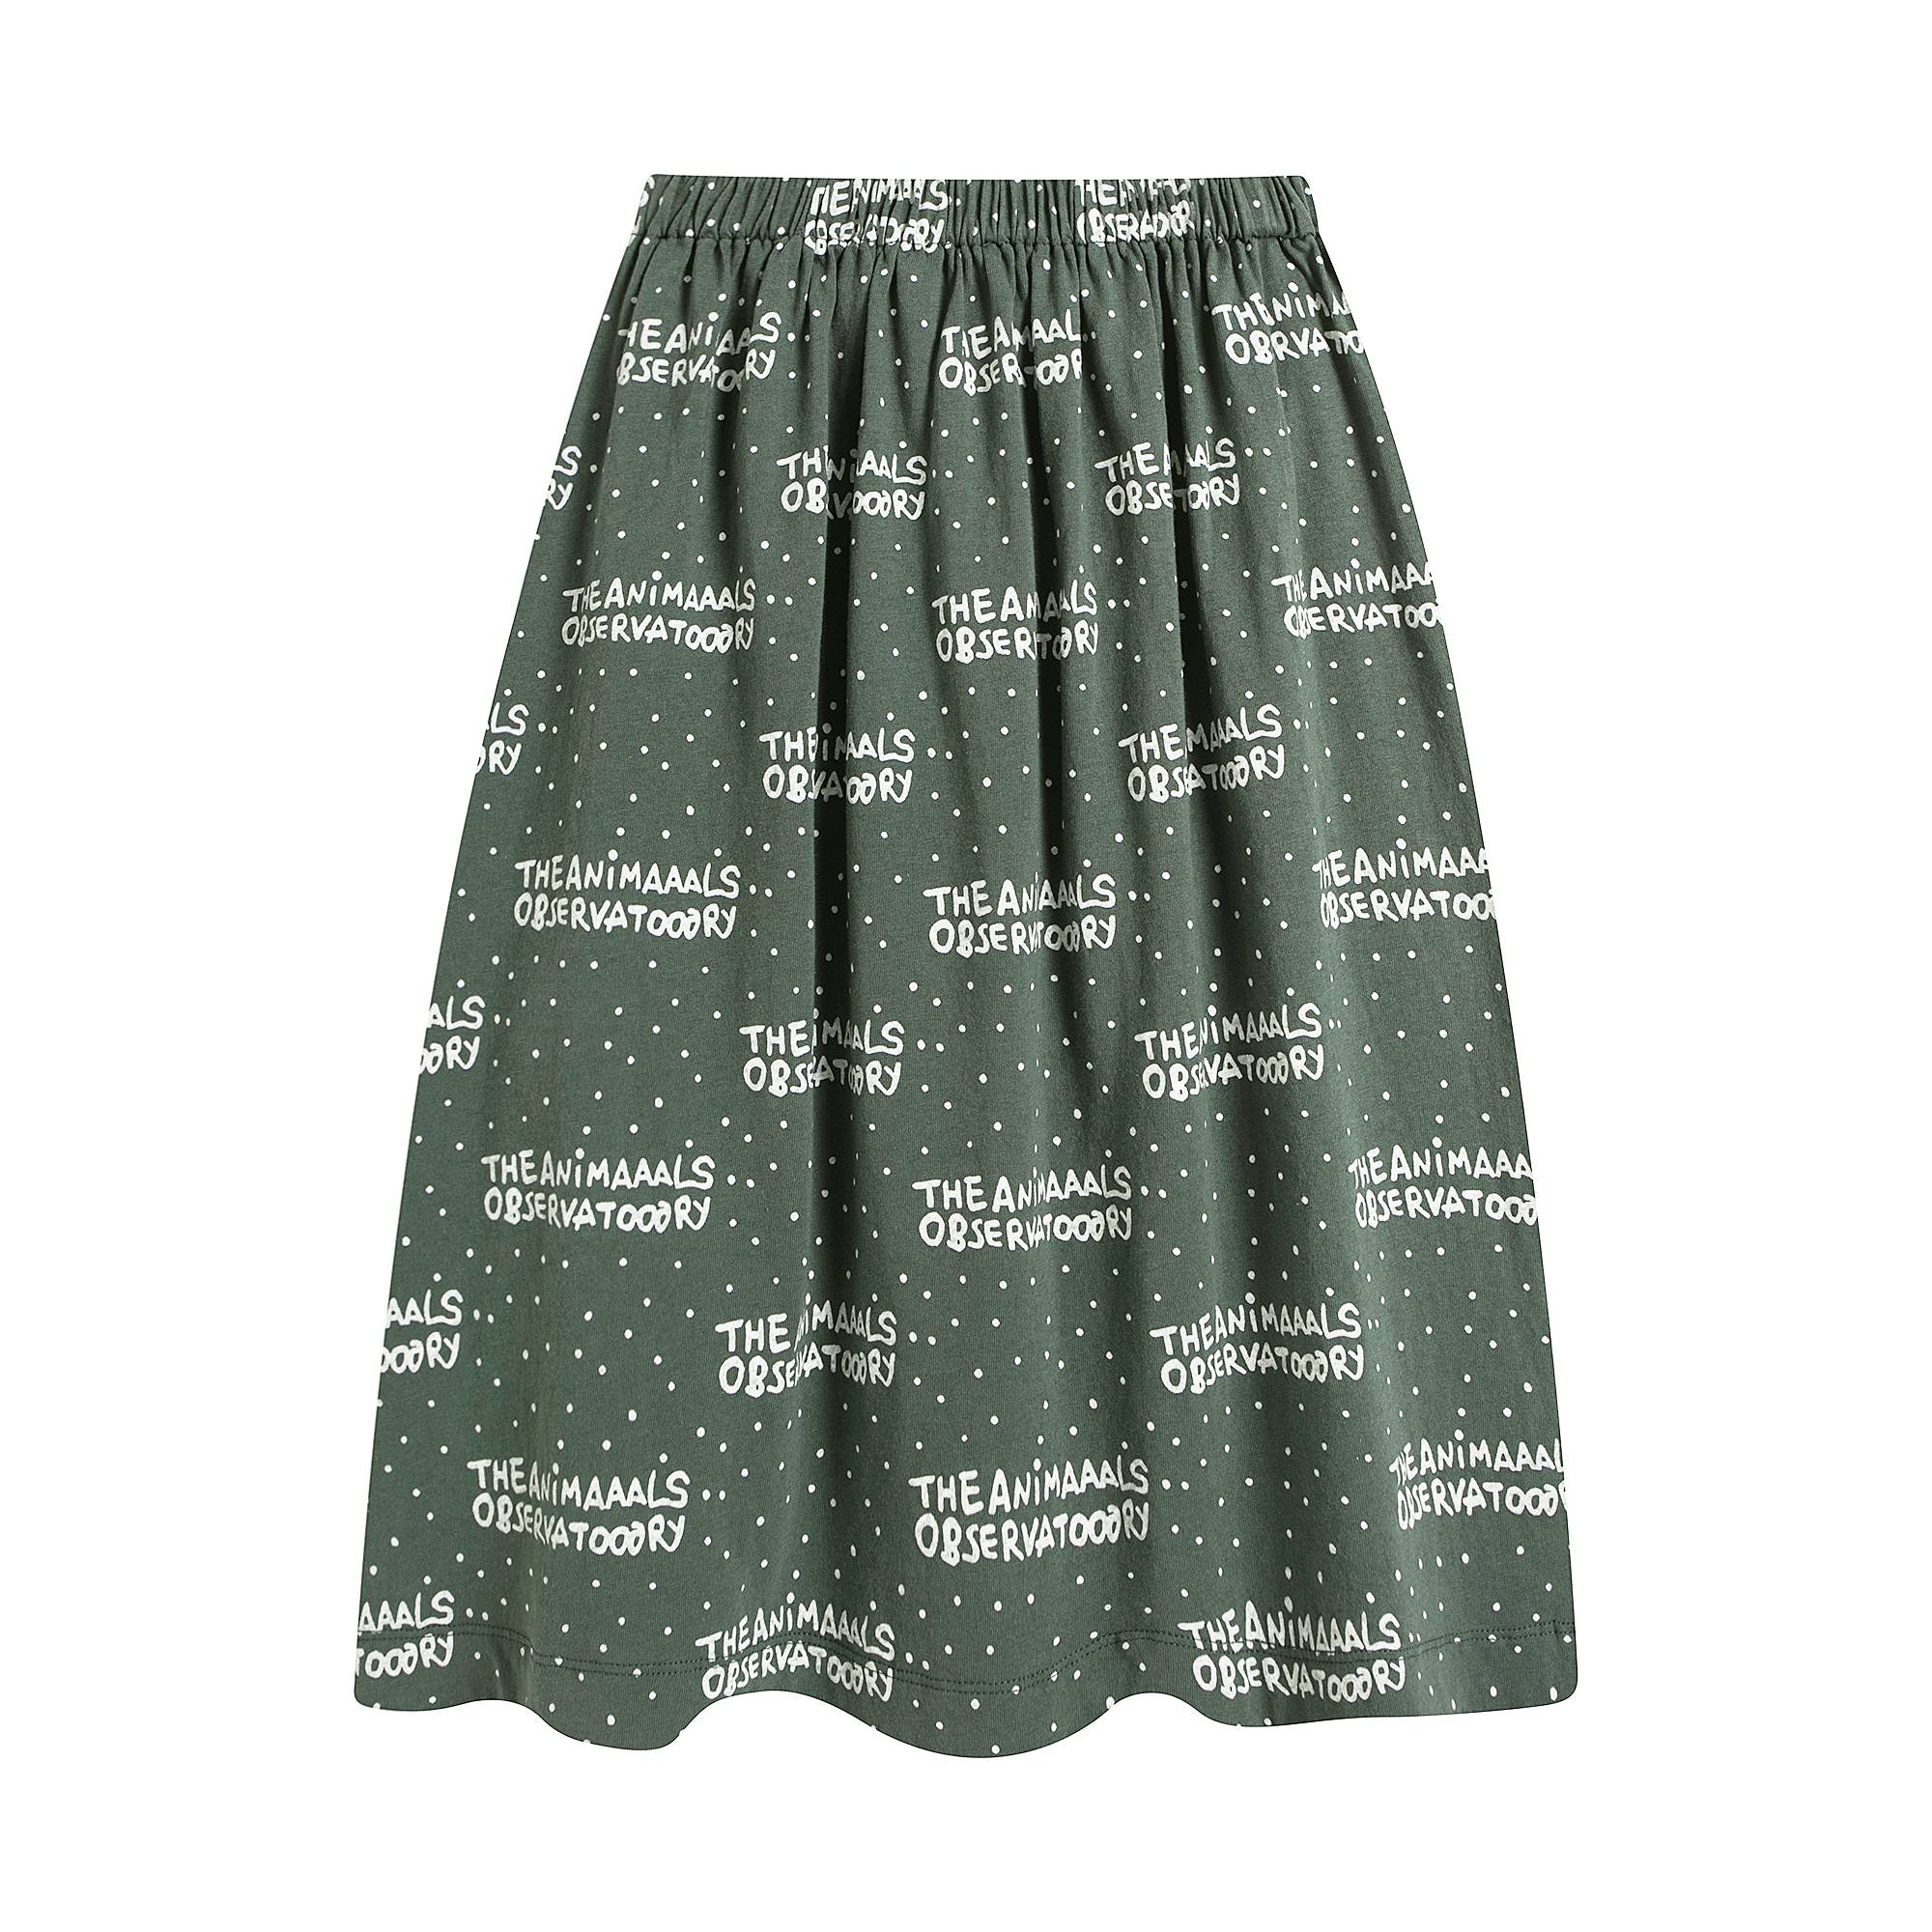 Girls Green Logo Skirt